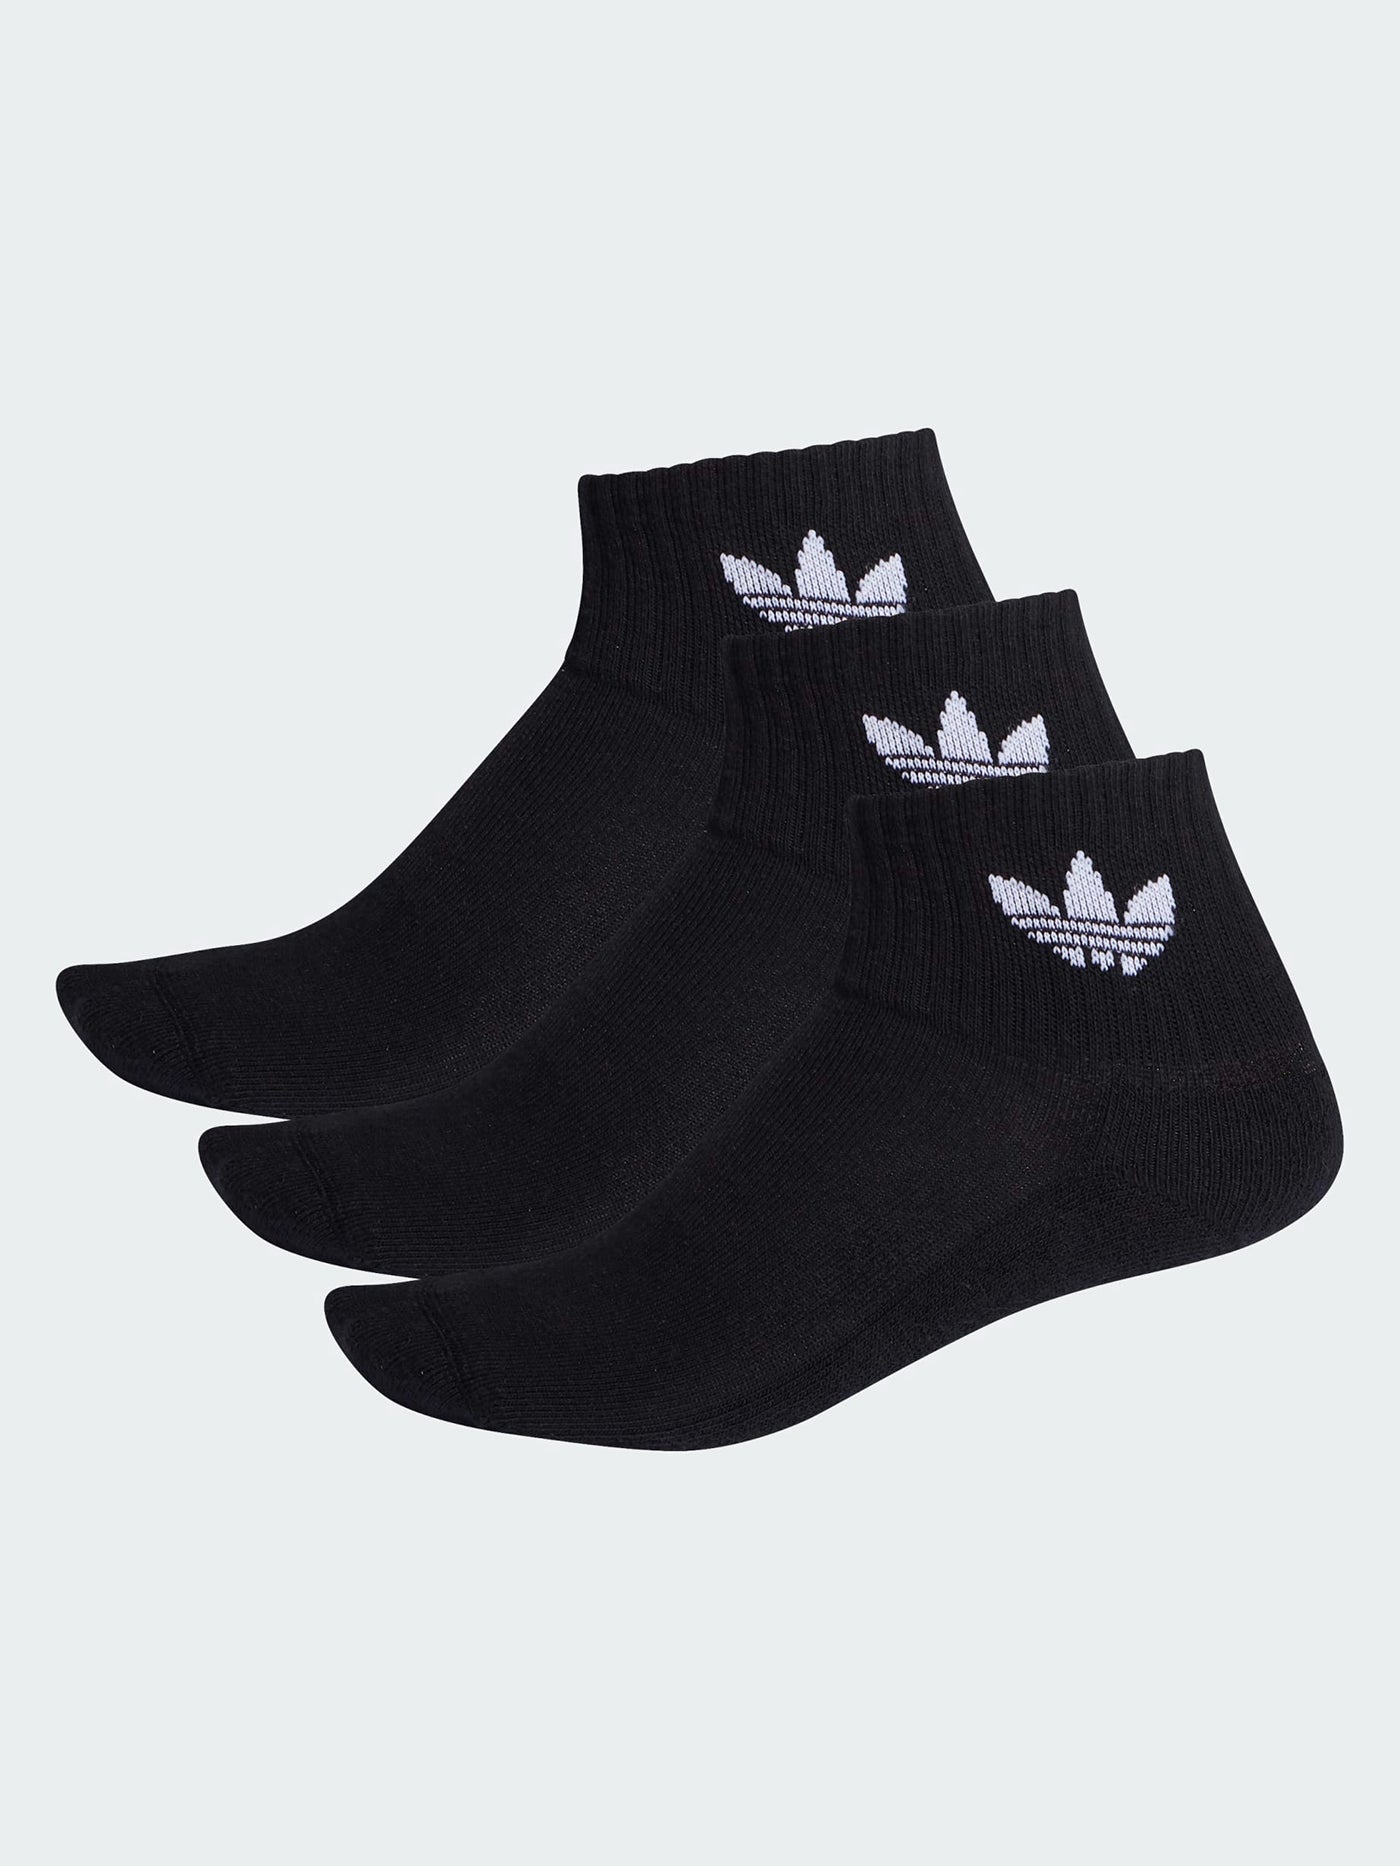 Adidas Mid-Cut 3 Pack Black Socks